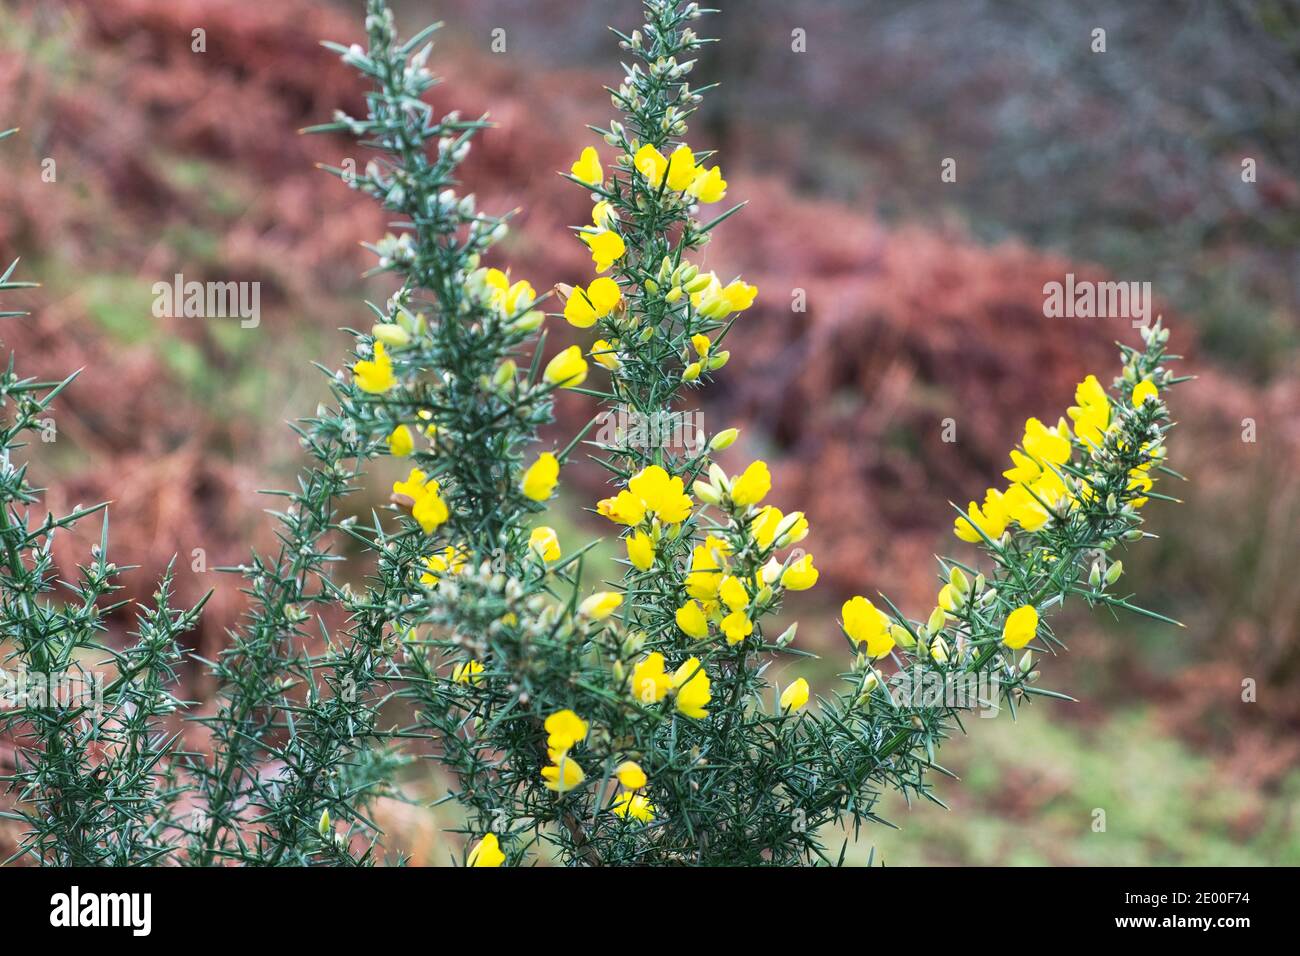 Gelber Ginsterbusch oder Pelze Ulex europaeus blüht in voller Blüte In walisischer Landschaft im Winter Dezember 2021 Carmarthenshire Wales Großbritannien KATHY DEWITT Stockfoto